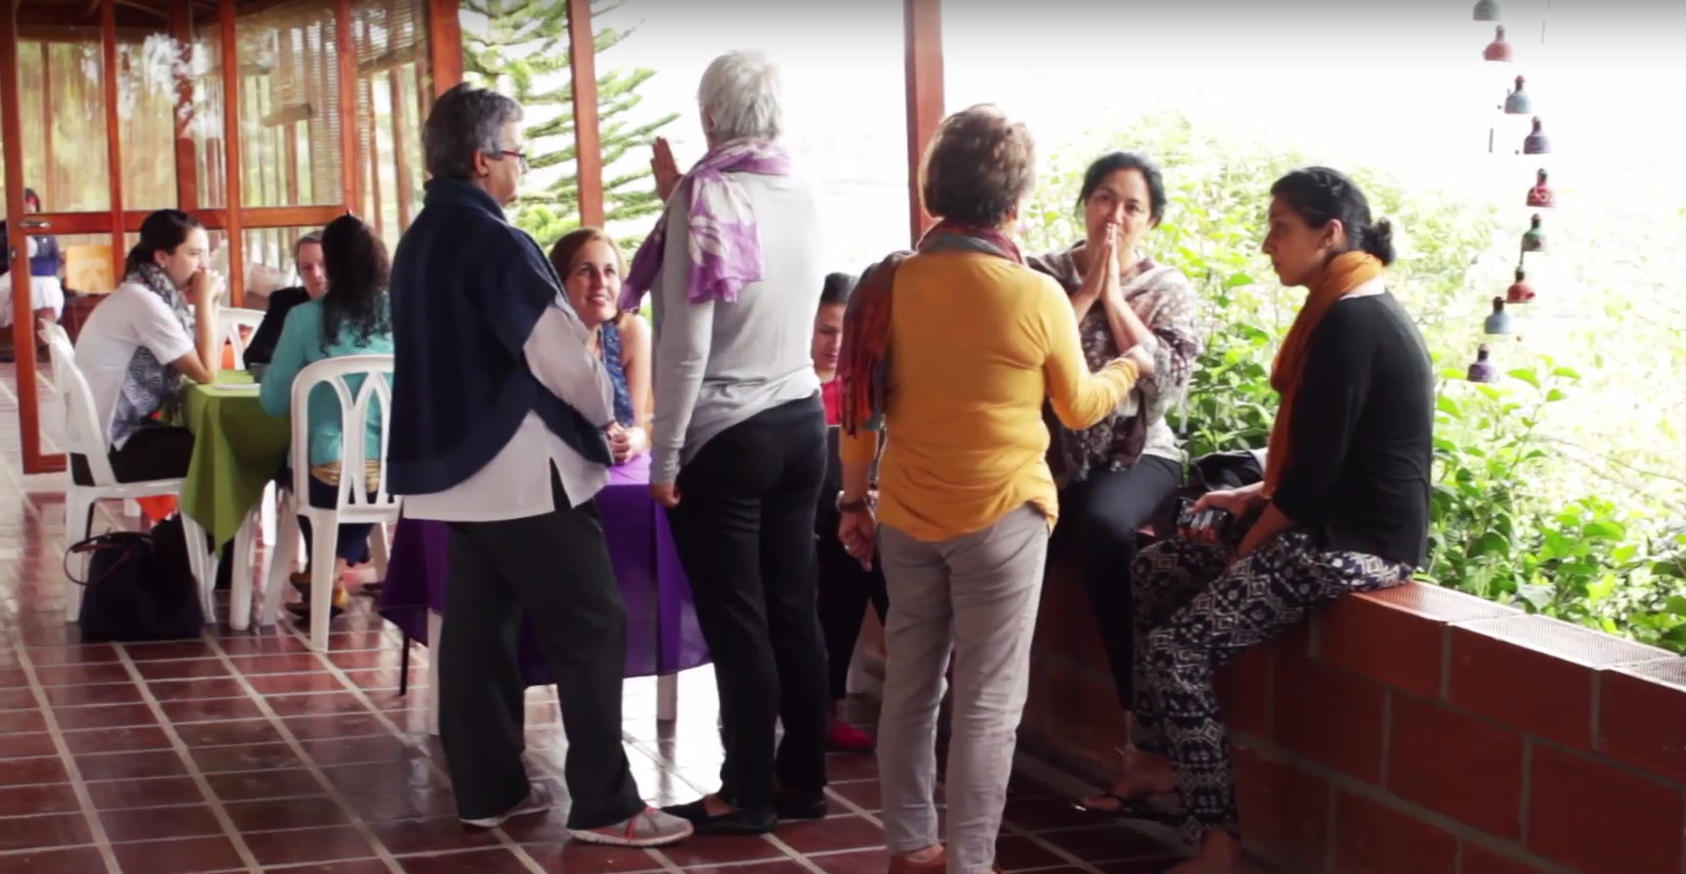 colombian women mediators